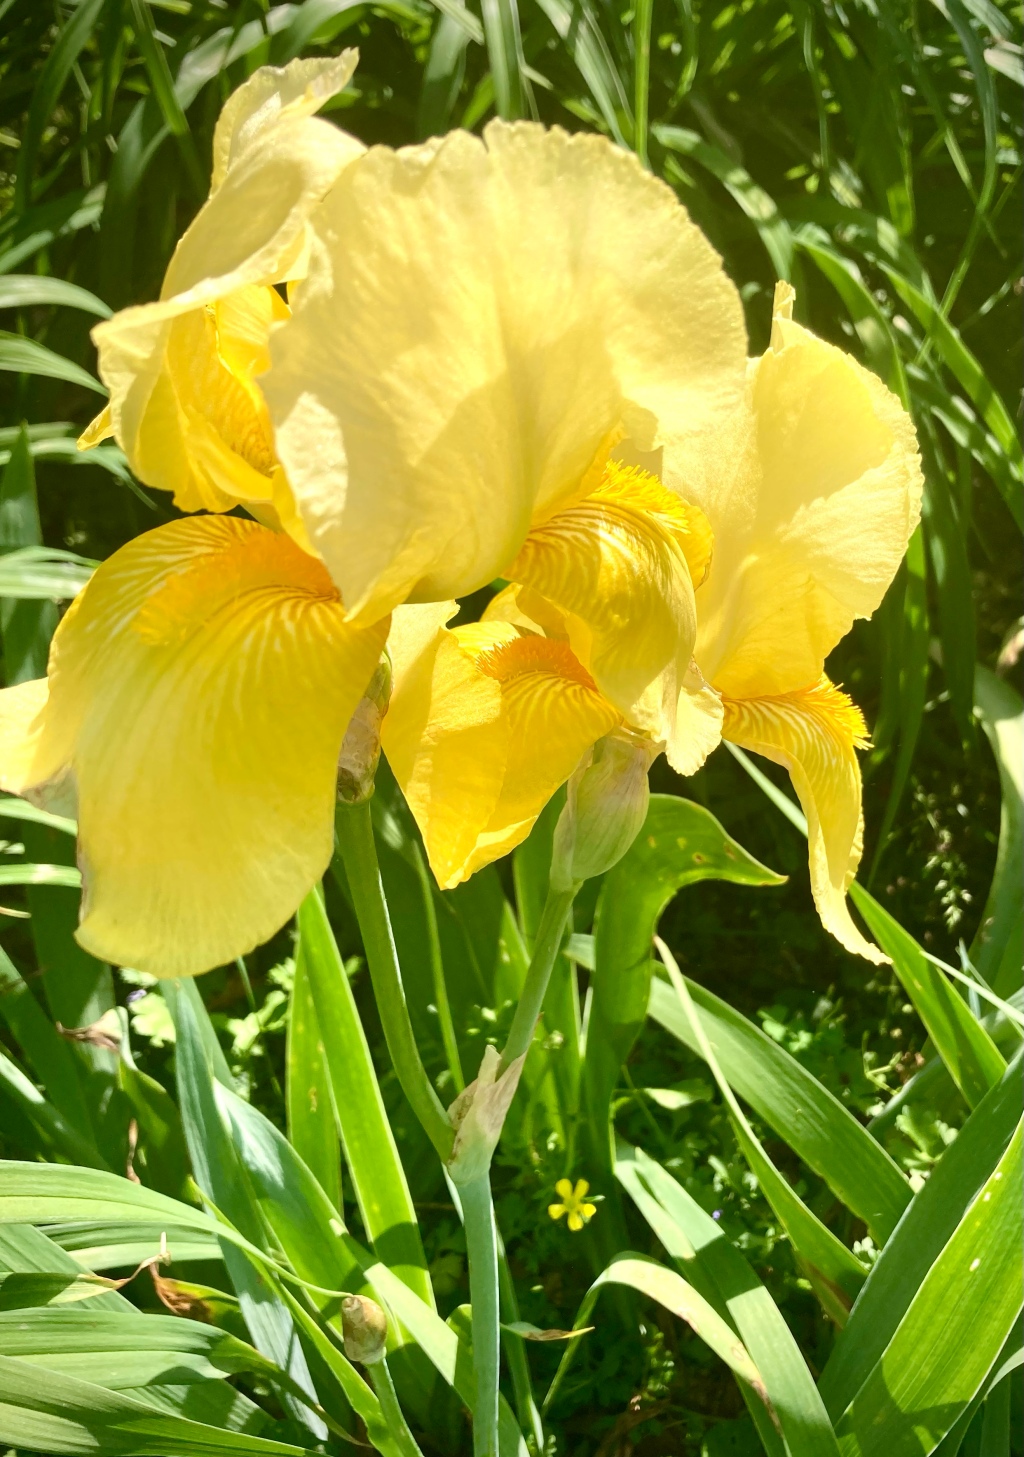 Iris Blooms Abound